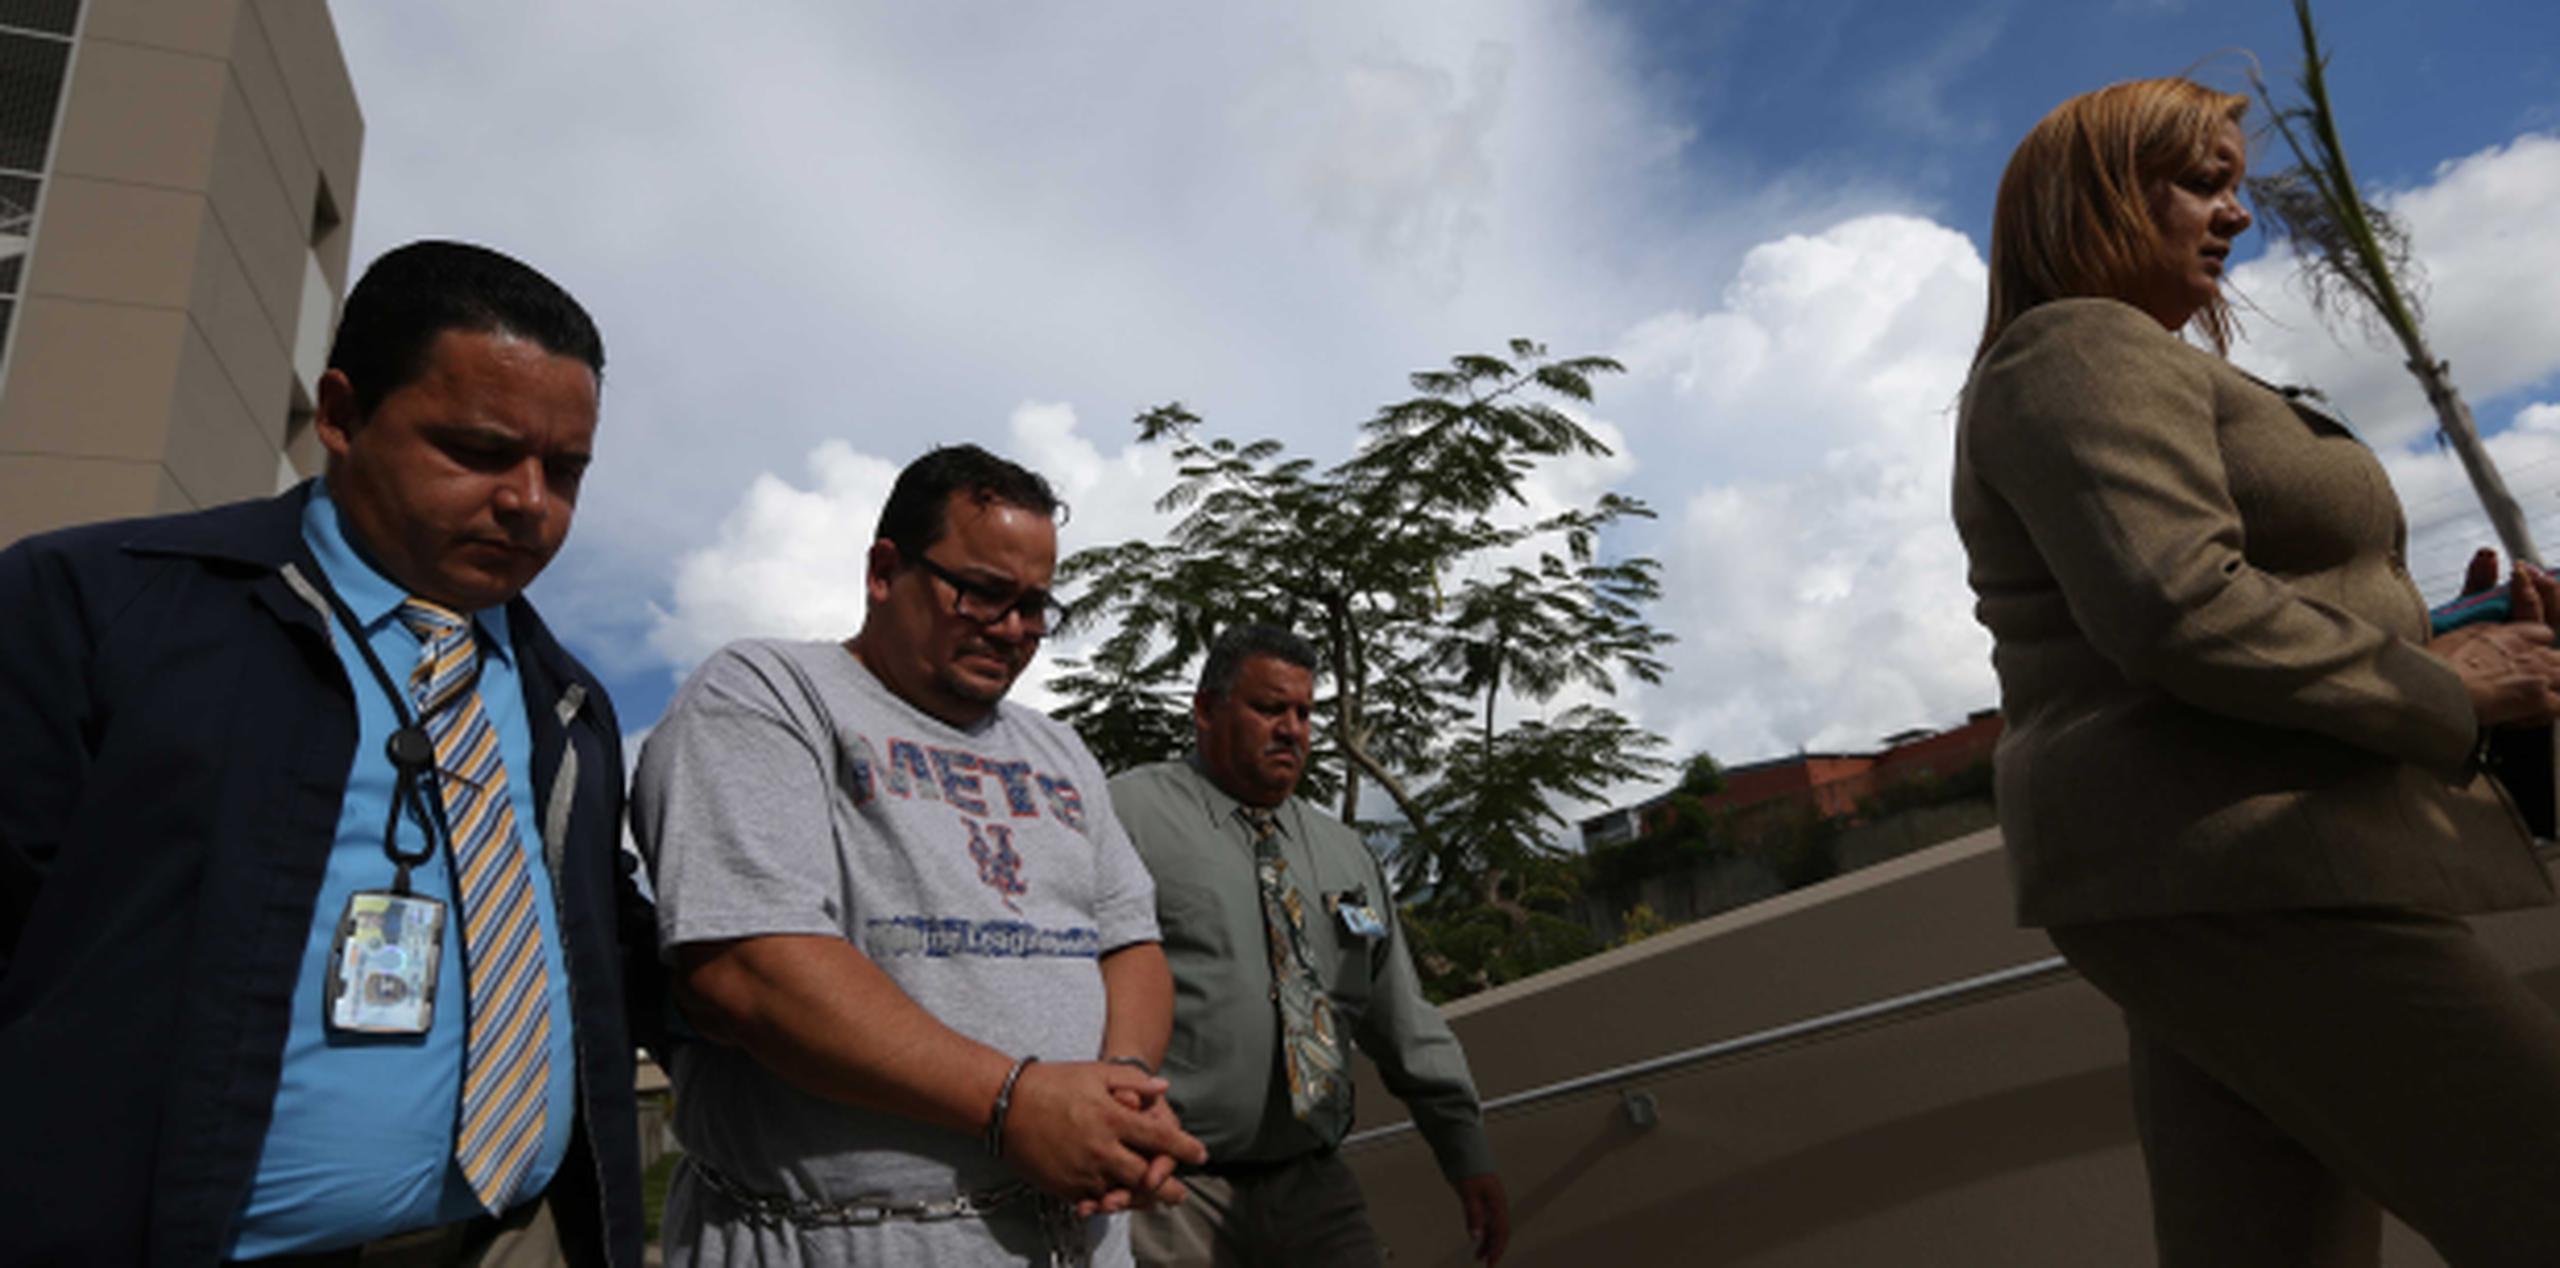 El exsargento, Jesús M. Rivera Cruz, se despidió de su familia en el tribunal antes de ser transportado a un centro de detención. (francisco.rodriguez@gfrmedia.com)